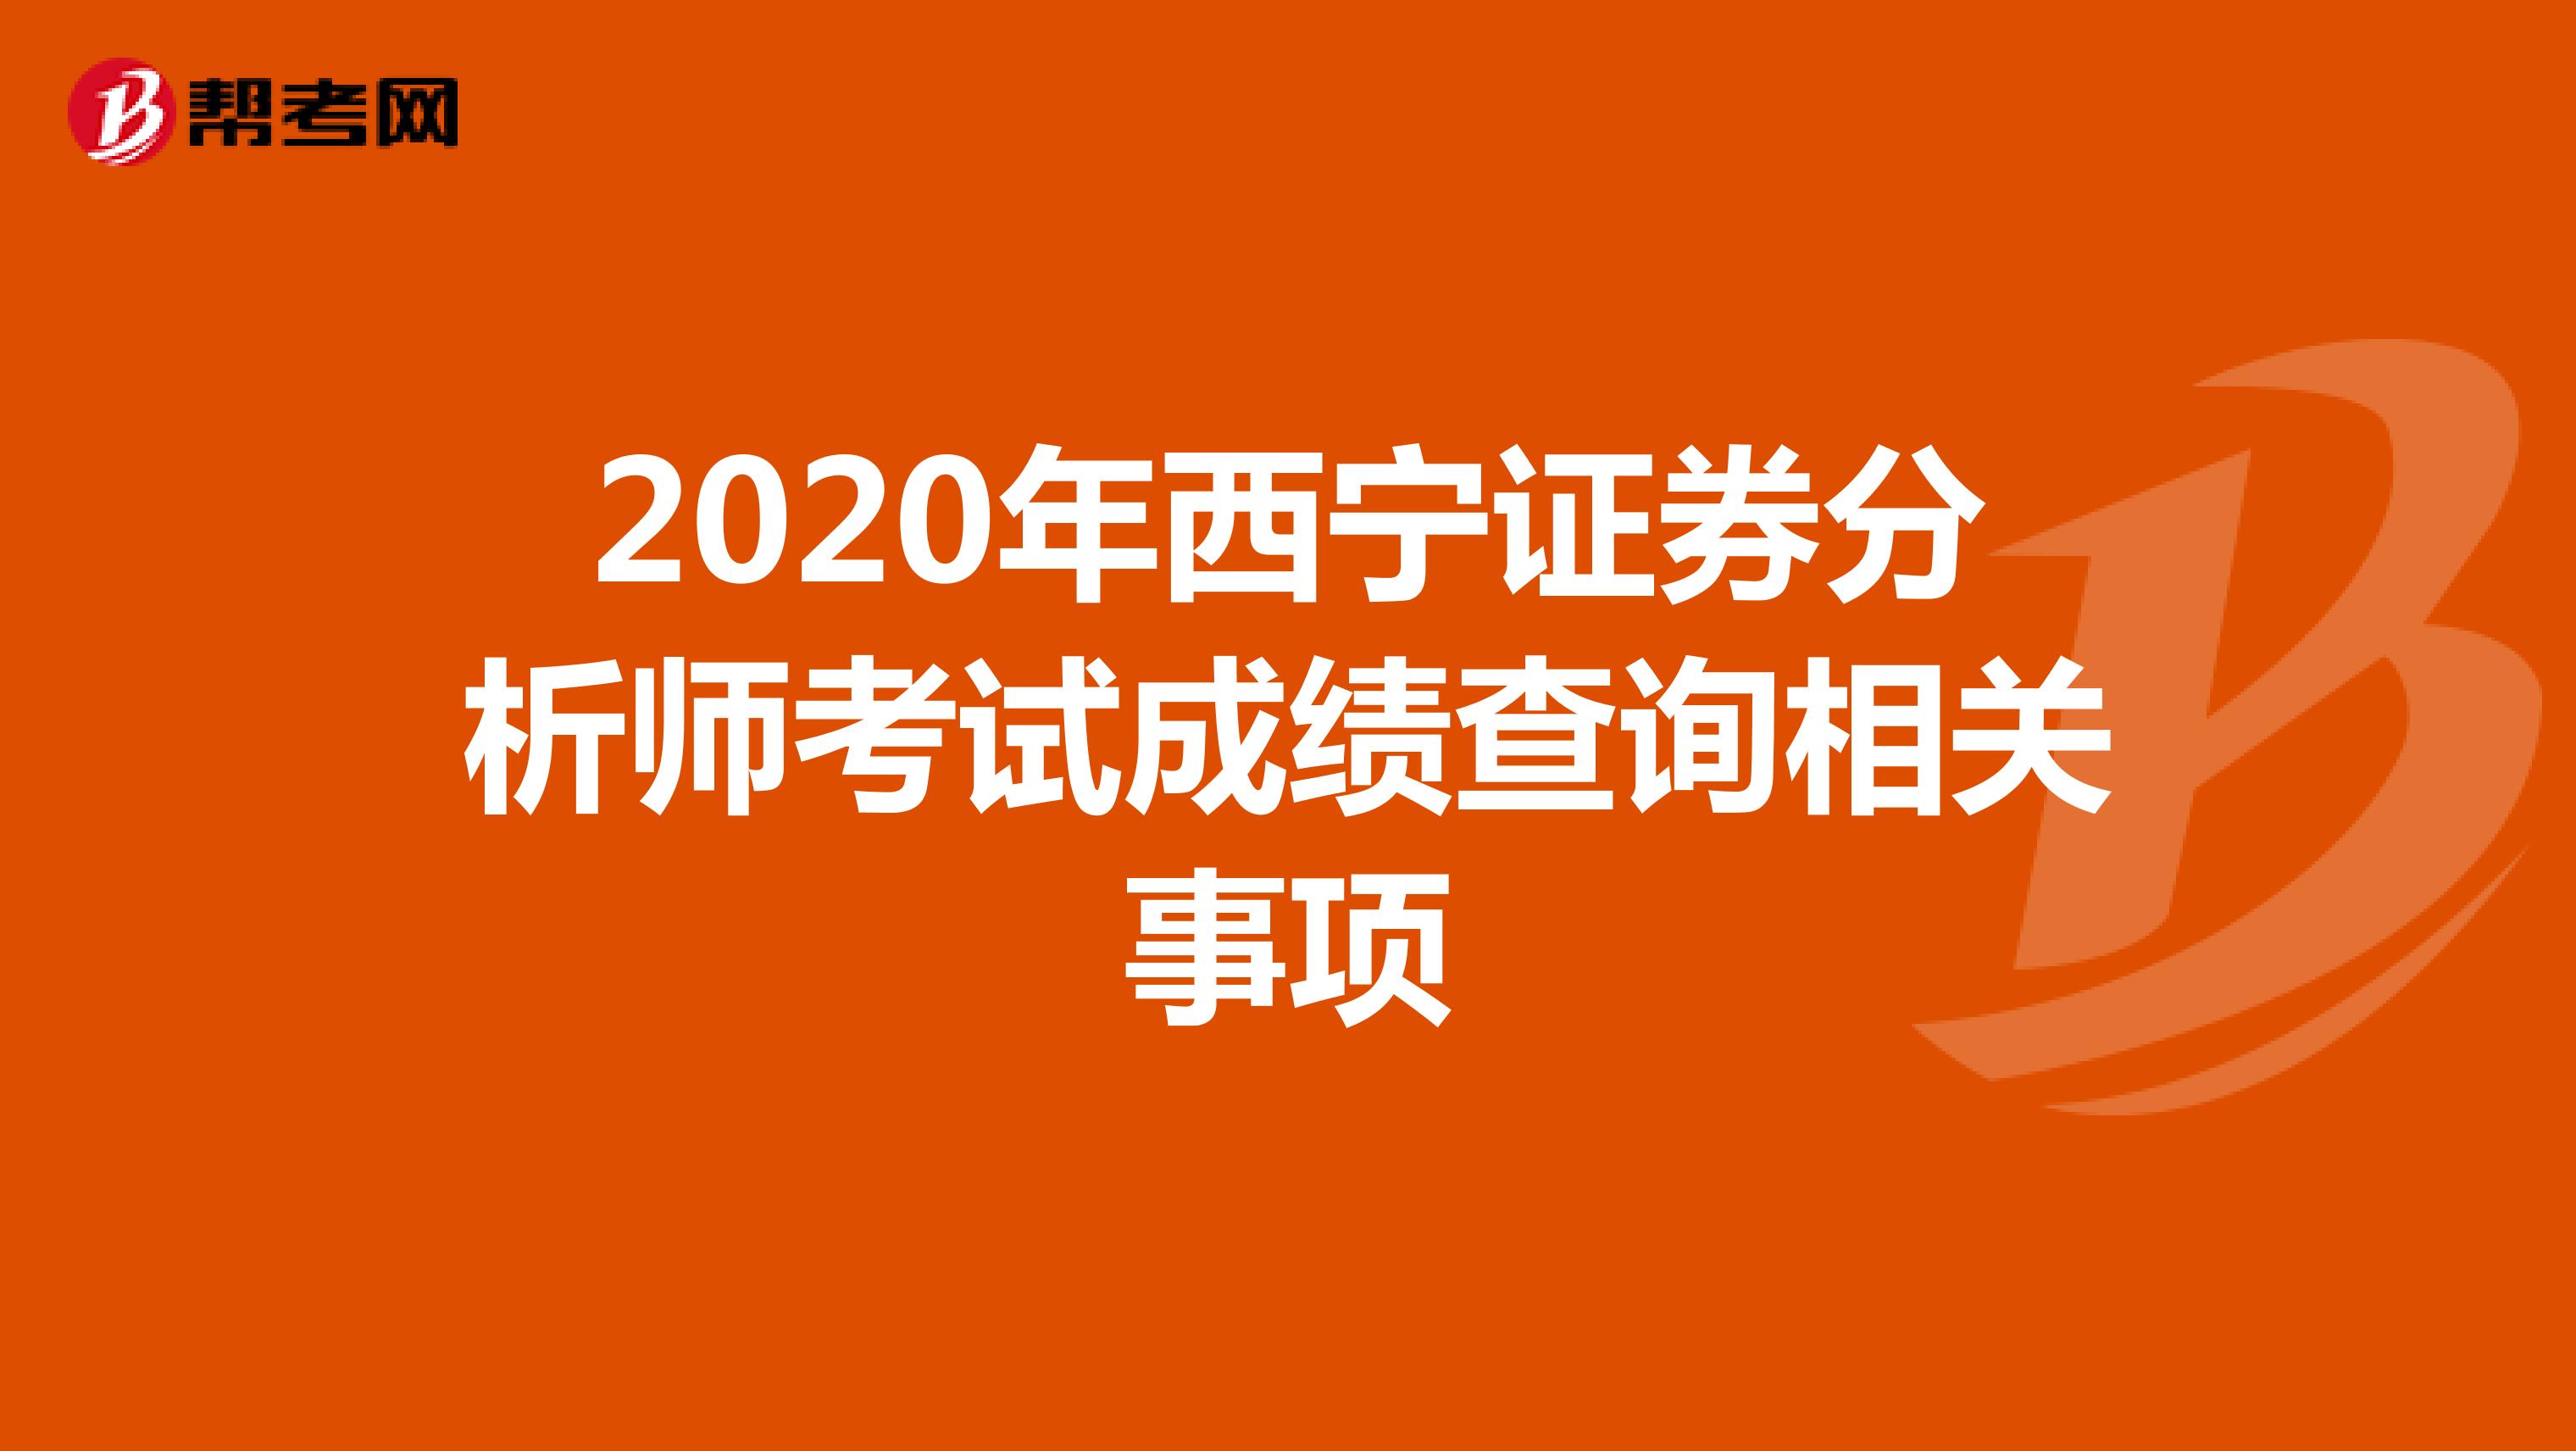 2020年西宁证券分析师考试成绩查询相关事项